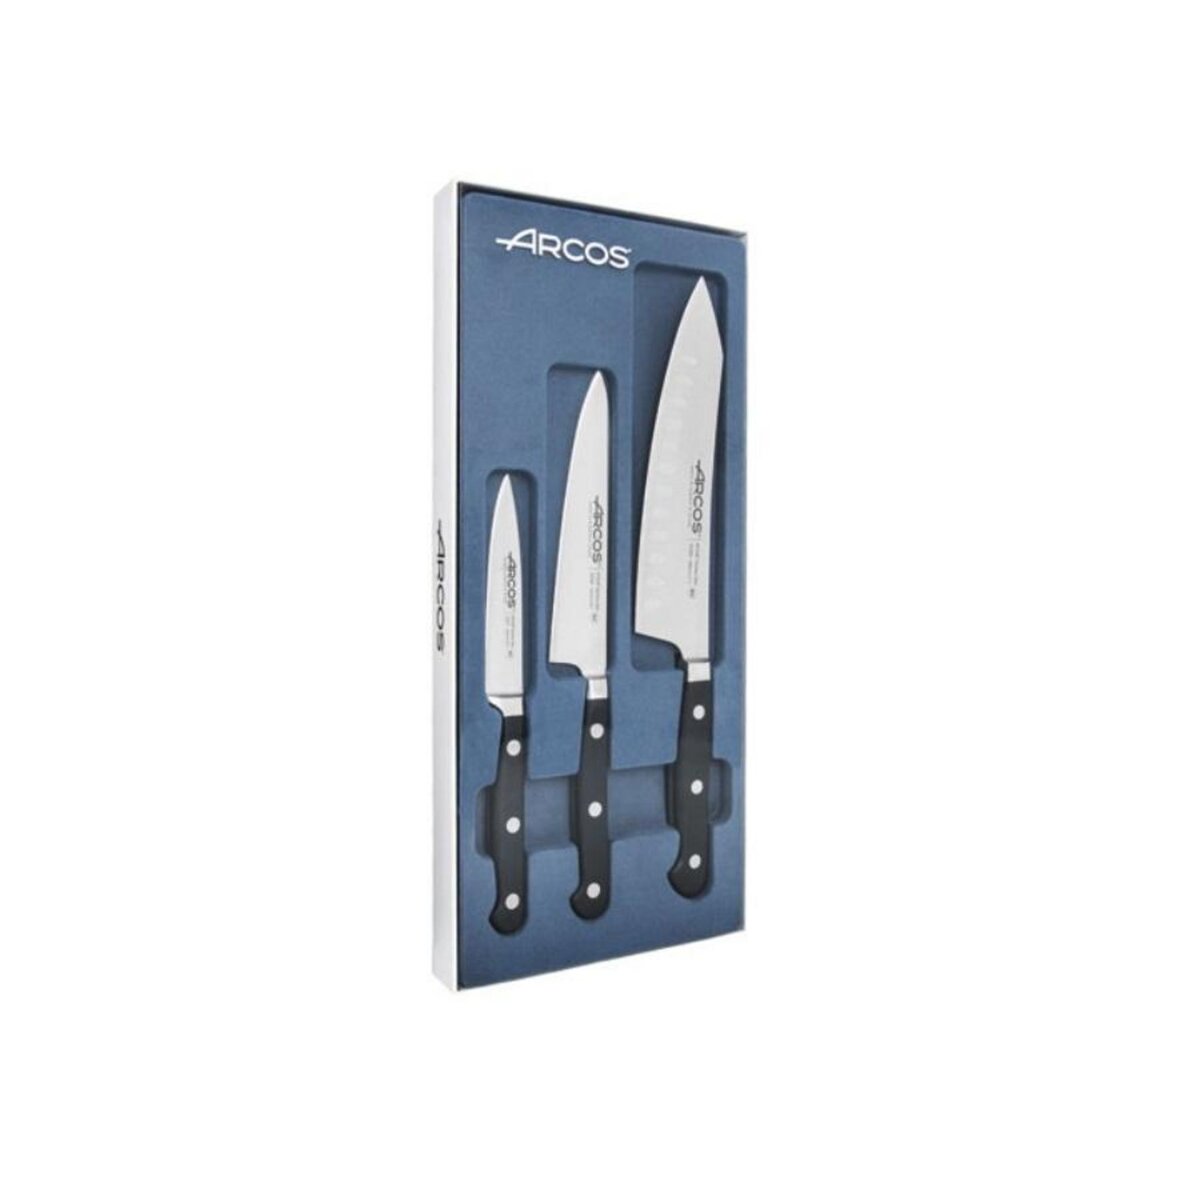 Arcos Set de 3 couteaux de cuisine inox - 805900